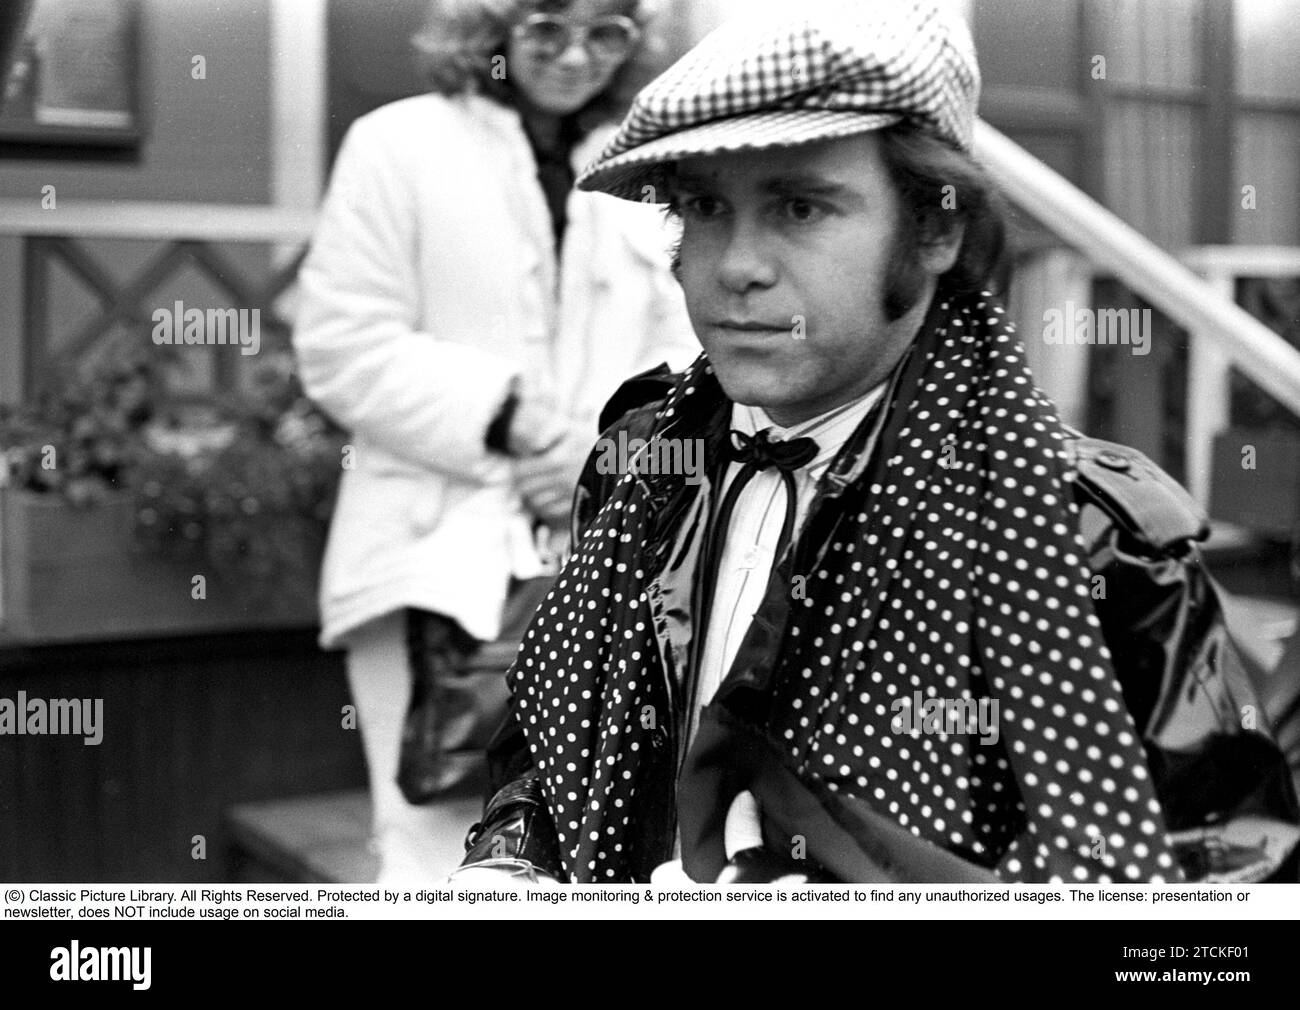 Elton John. Englische Sängerin, Songwriterin geboren märz 25 1947. Abgebildet trägt eine karierte Mütze und einen passenden karierten Schal während eines Besuchs in Schweden 1978 Stockfoto